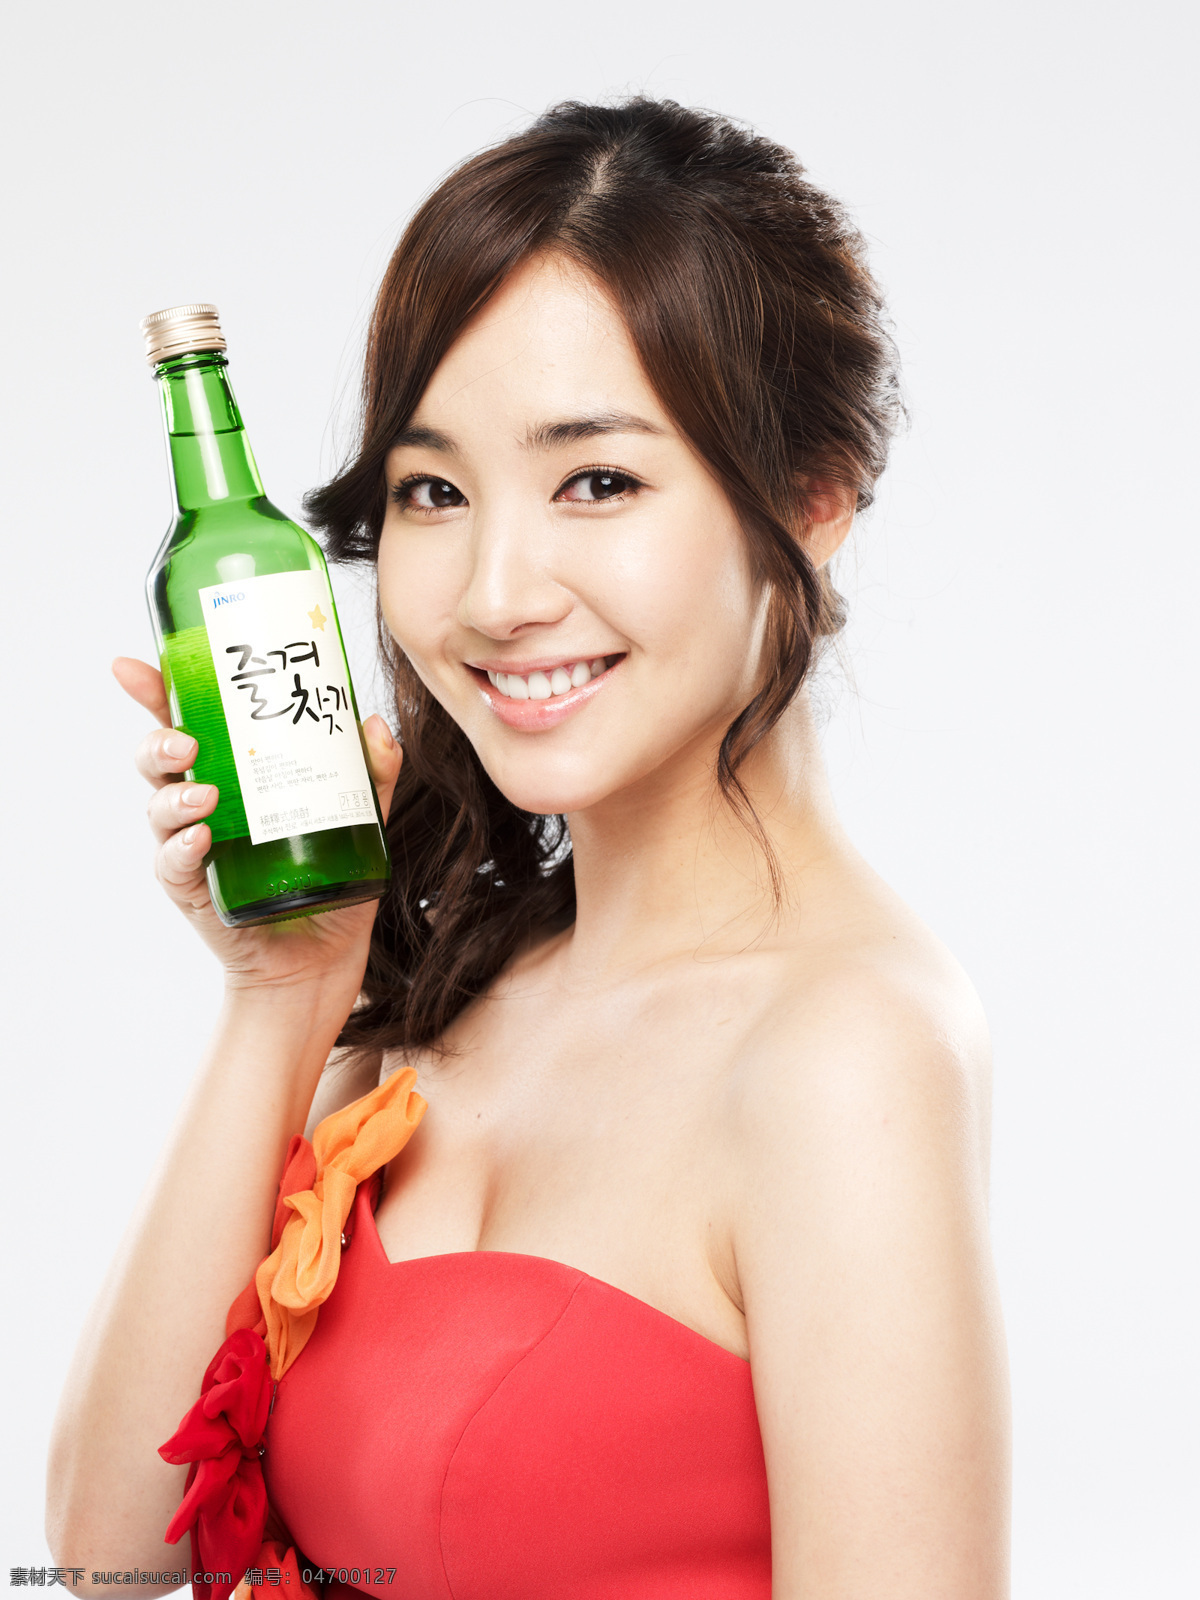 朴 敏 英 烧酒 广告 朴敏英 韩国 演员 明星偶像 人物图库